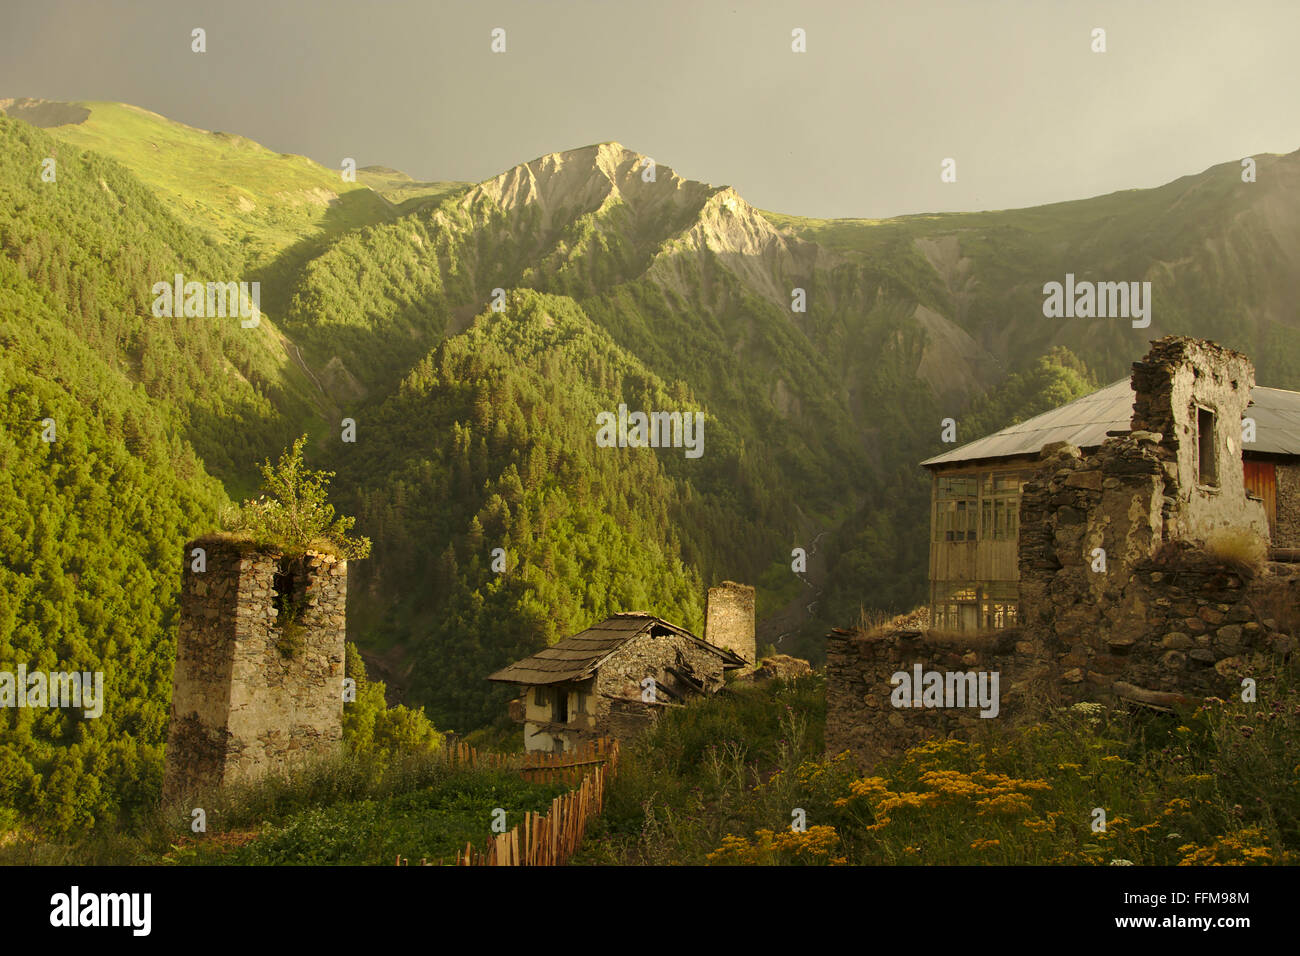 L'humeur du soir, les tours de défense du village Adishi, nuages, lumière chaude et arc-en-ciel. Mestia-Ushguli-Trek, Svaneti, Géorgie Banque D'Images